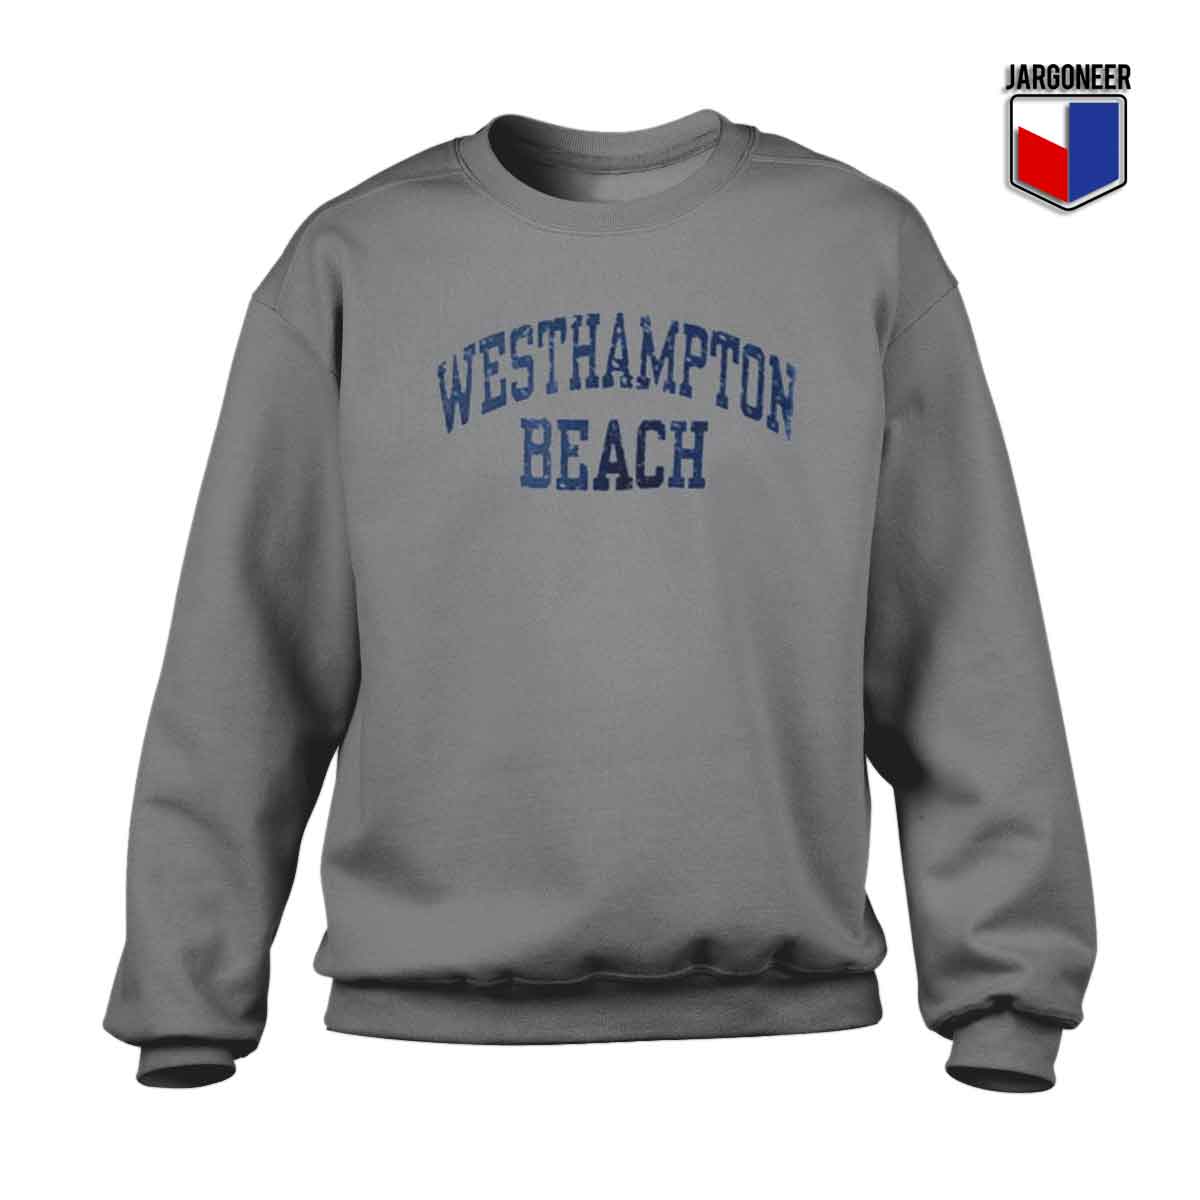 Westhampton Beach - Shop Unique Graphic Cool Shirt Designs